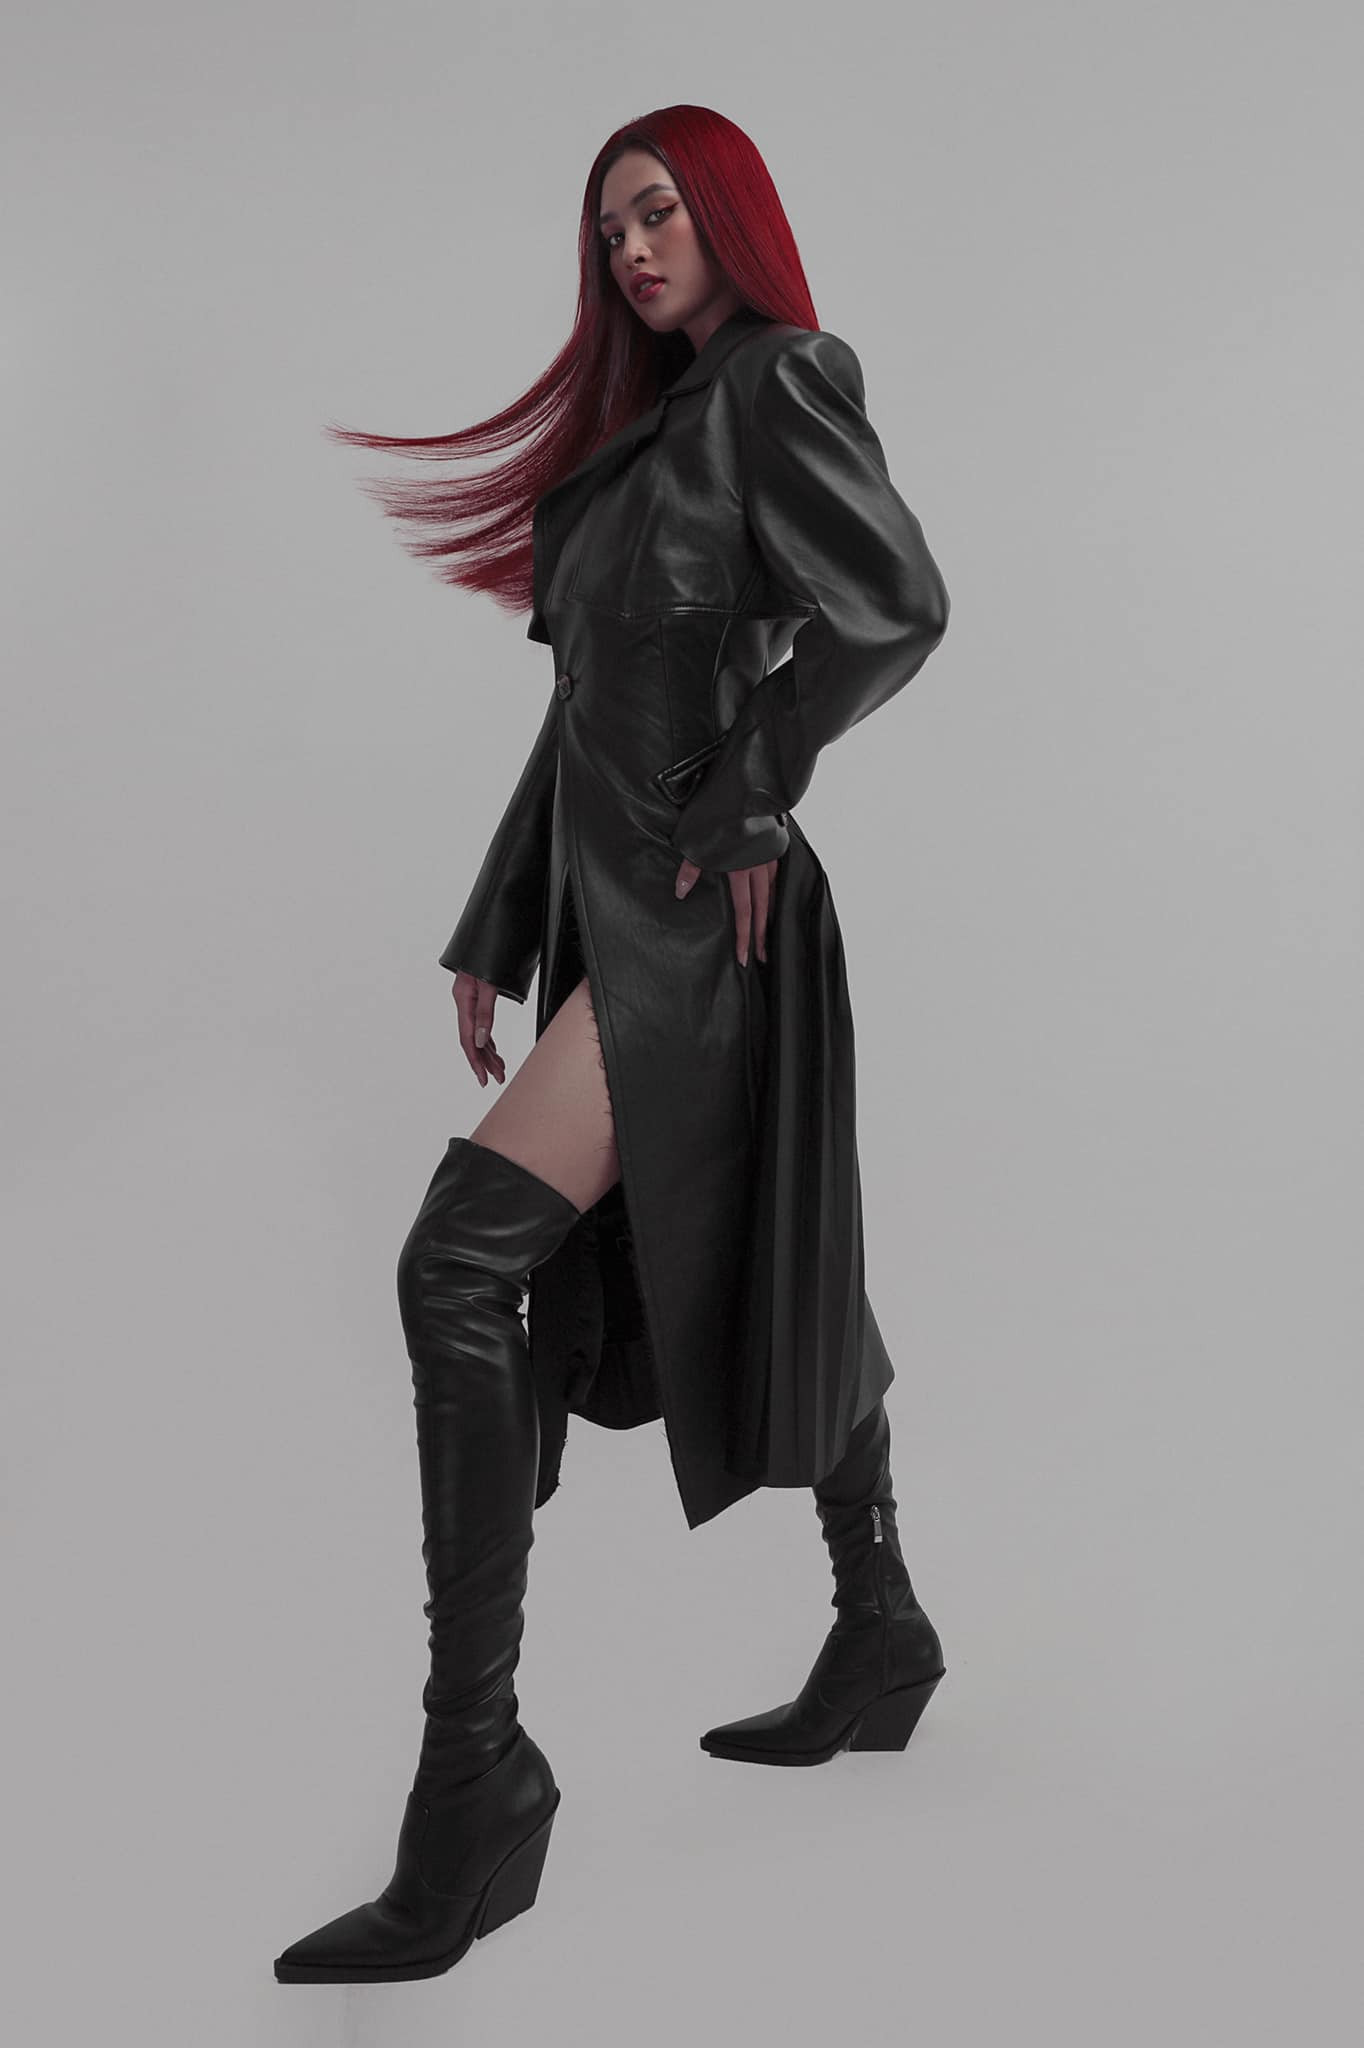 Classic cổ điển phá cách với áo khoác da dáng dài và boot cao cổ kết hợp với màu tóc đỏ cá tính.